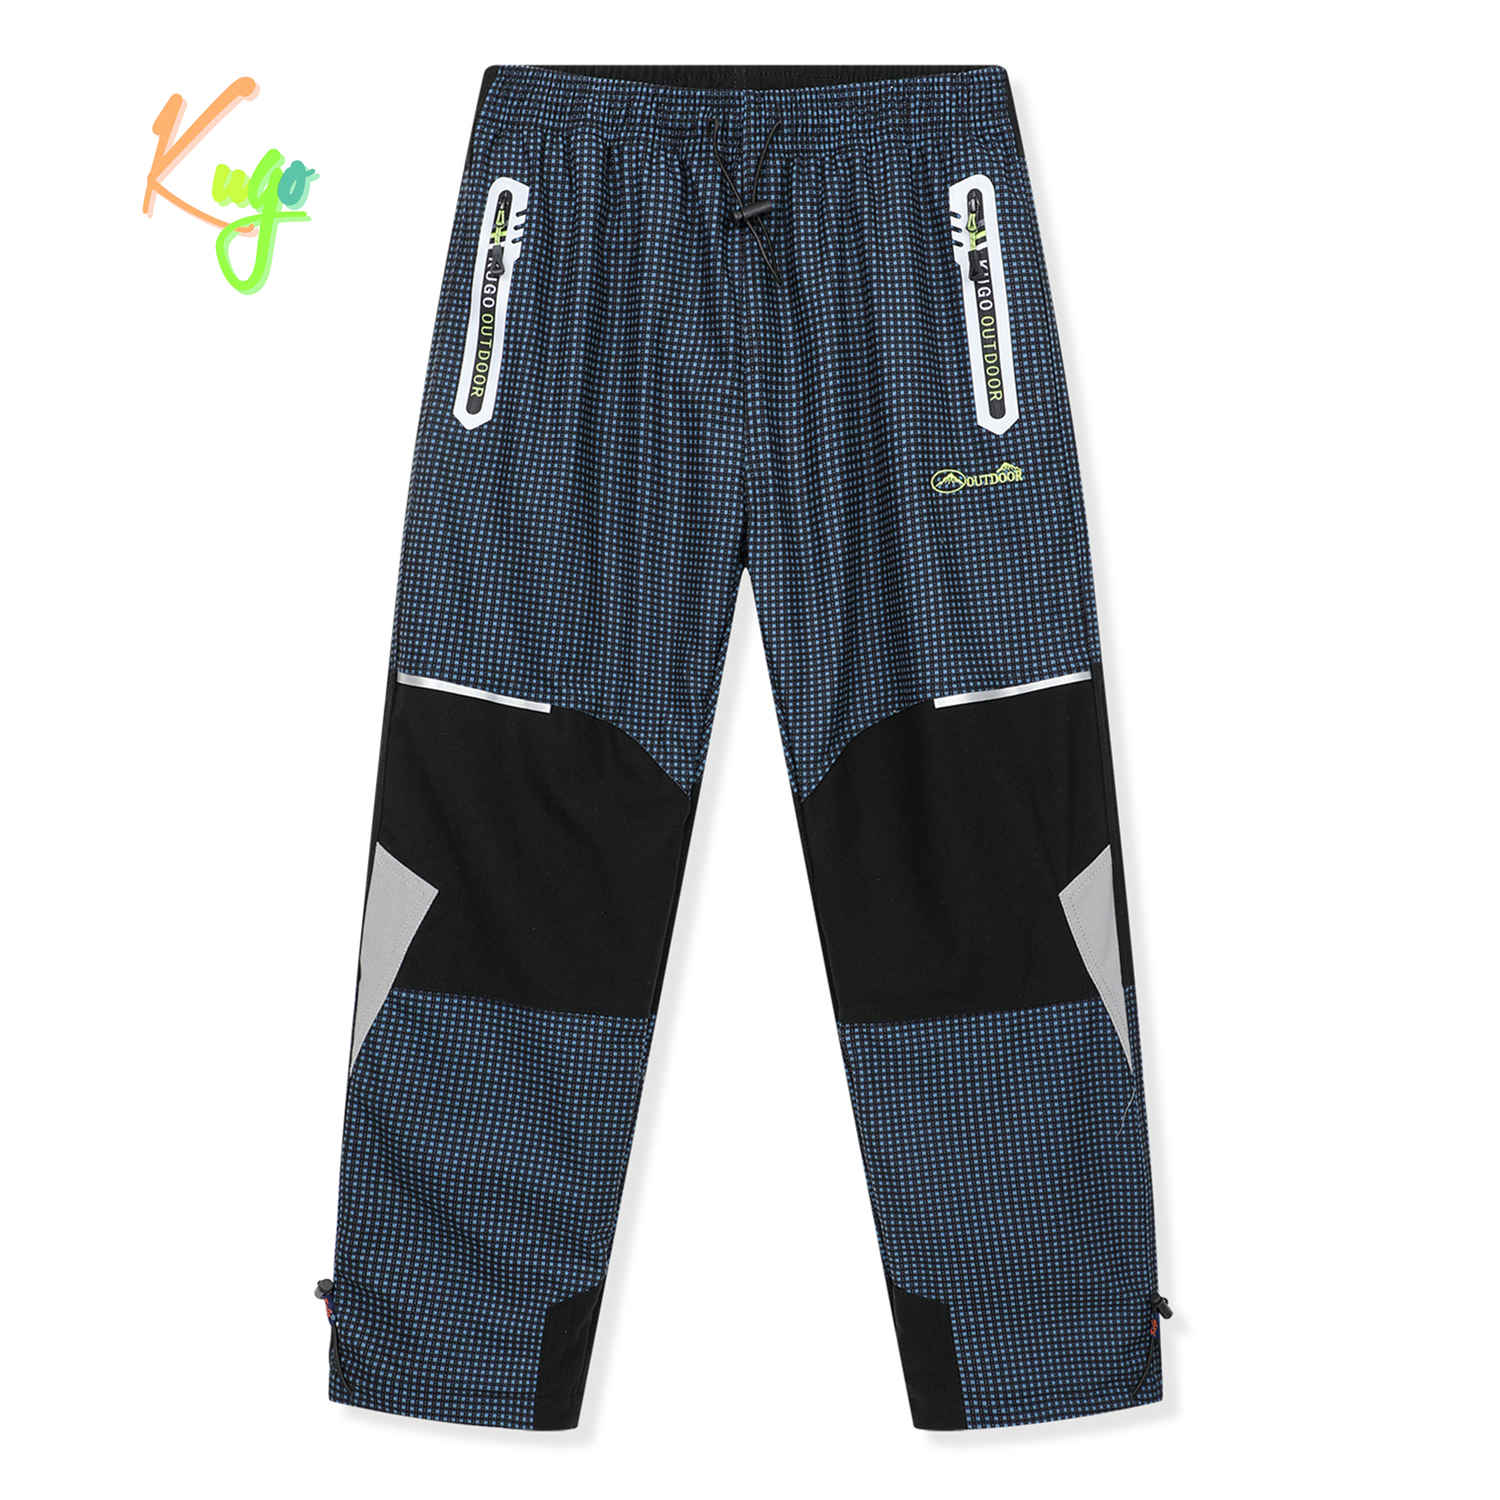 Chlapecké zateplené outdoorové kalhoty - KUGO C8861, petrol / signální výšivka Barva: Petrol, Velikost: 164